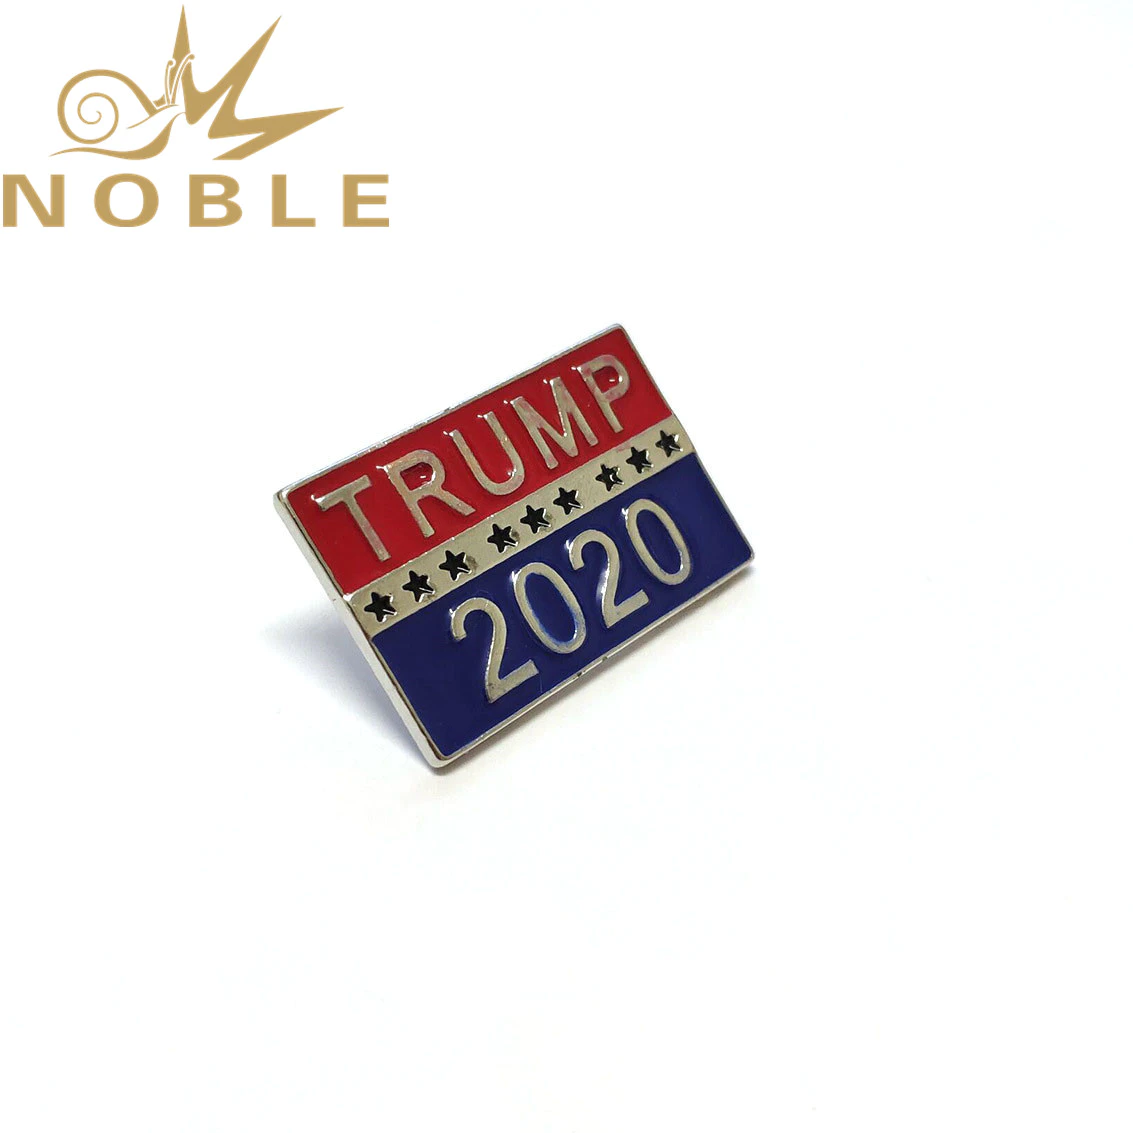 Custom 2020 American Vote Trump Lapel Pin Badges in Stock